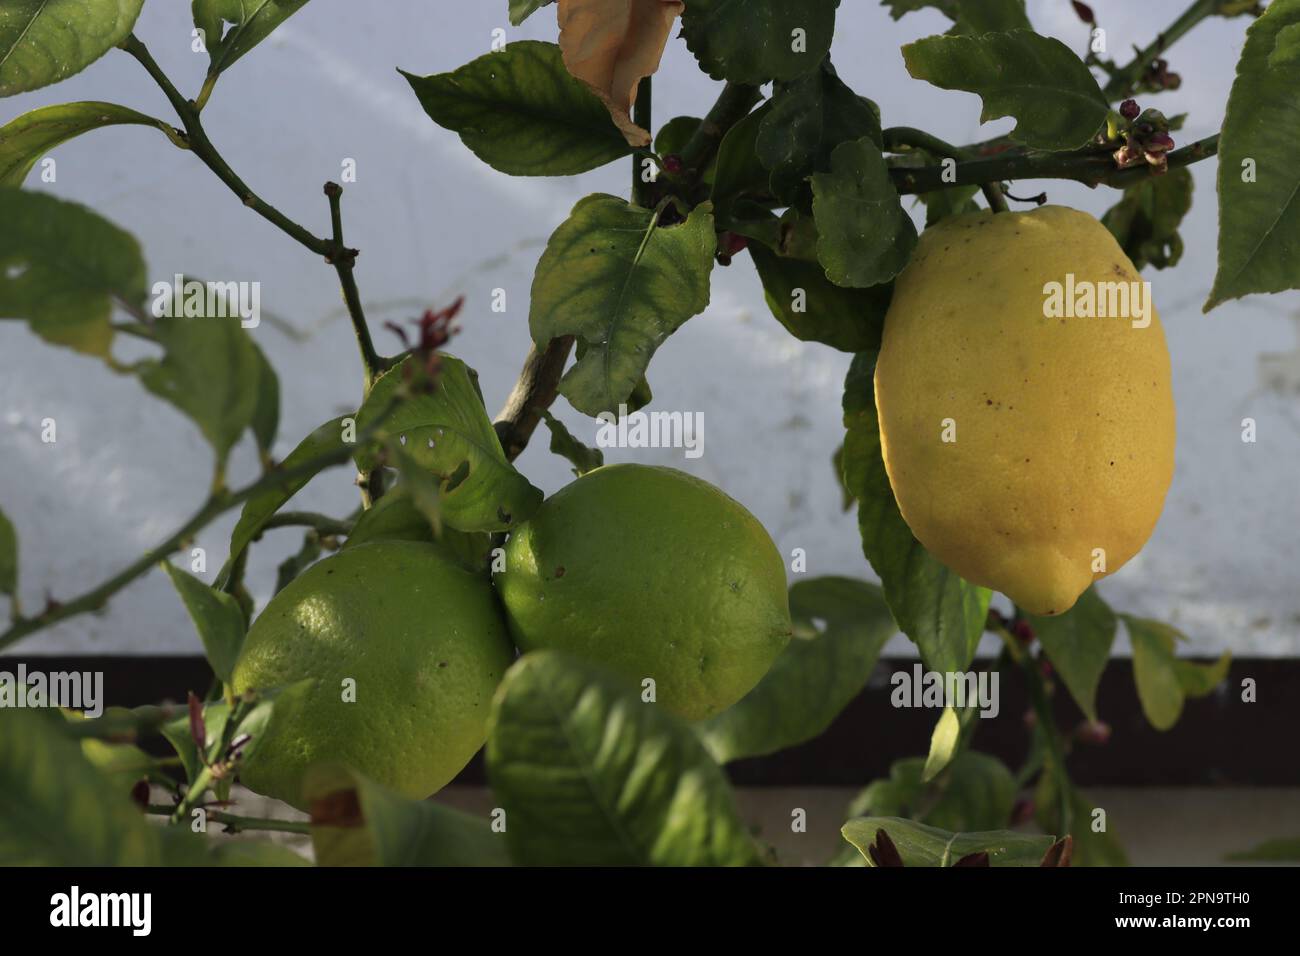 Limones pendiendo de una rama Stock Photo